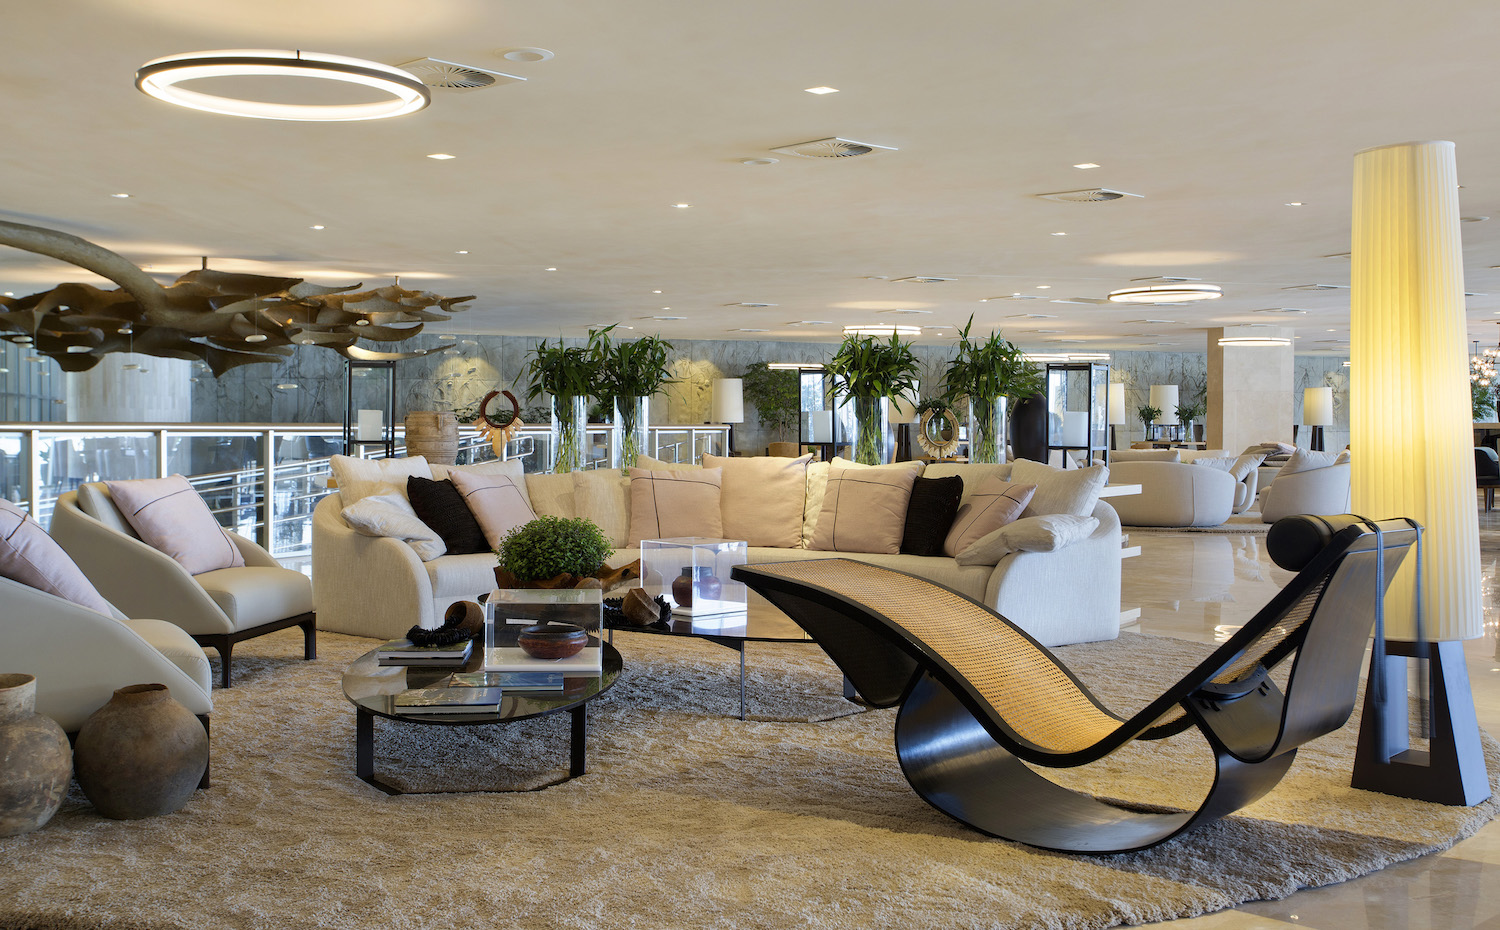 Entre el mobiliario destaca esta chaise longue del propio Niemeyer en el hotel Nacional de Rio de Janeiro